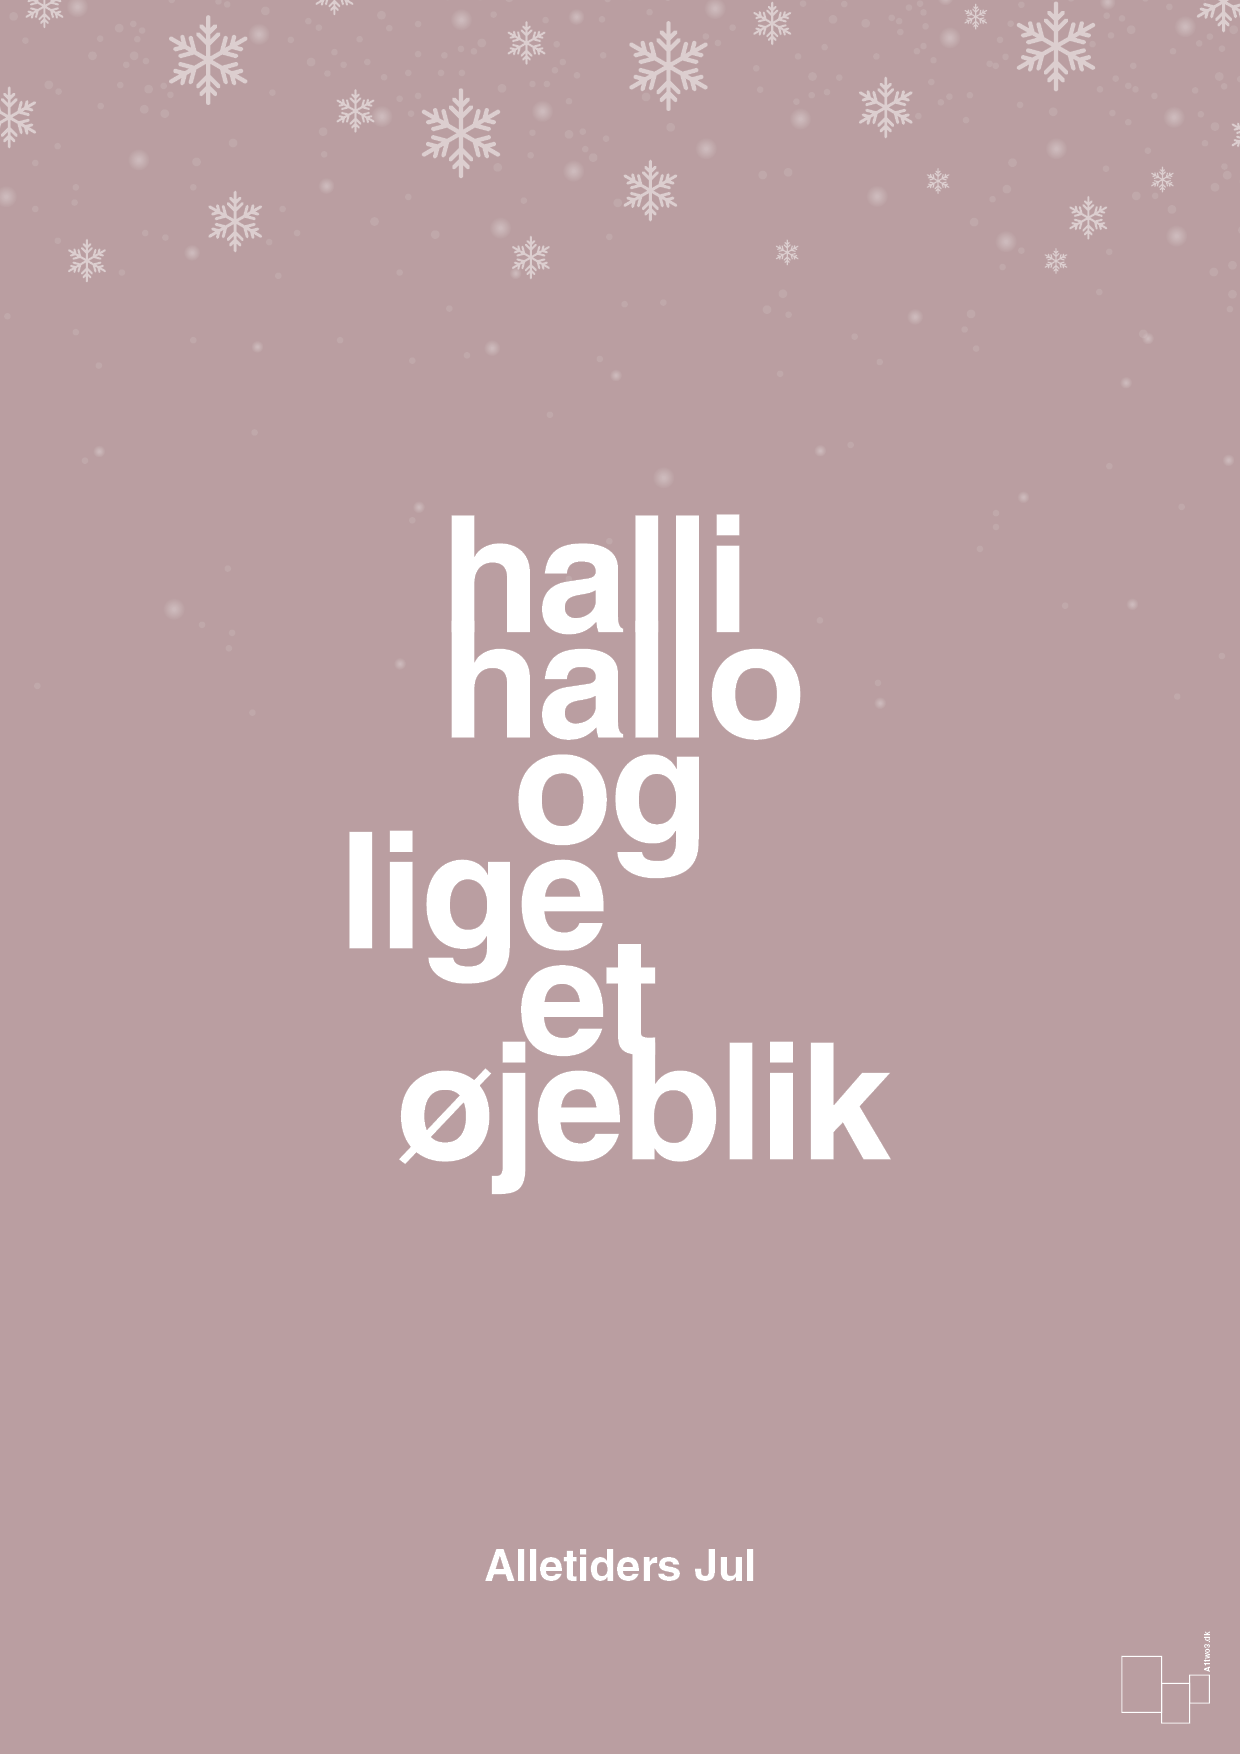 halli hallo og lige et øjeblik - Plakat med Begivenheder i Light Rose